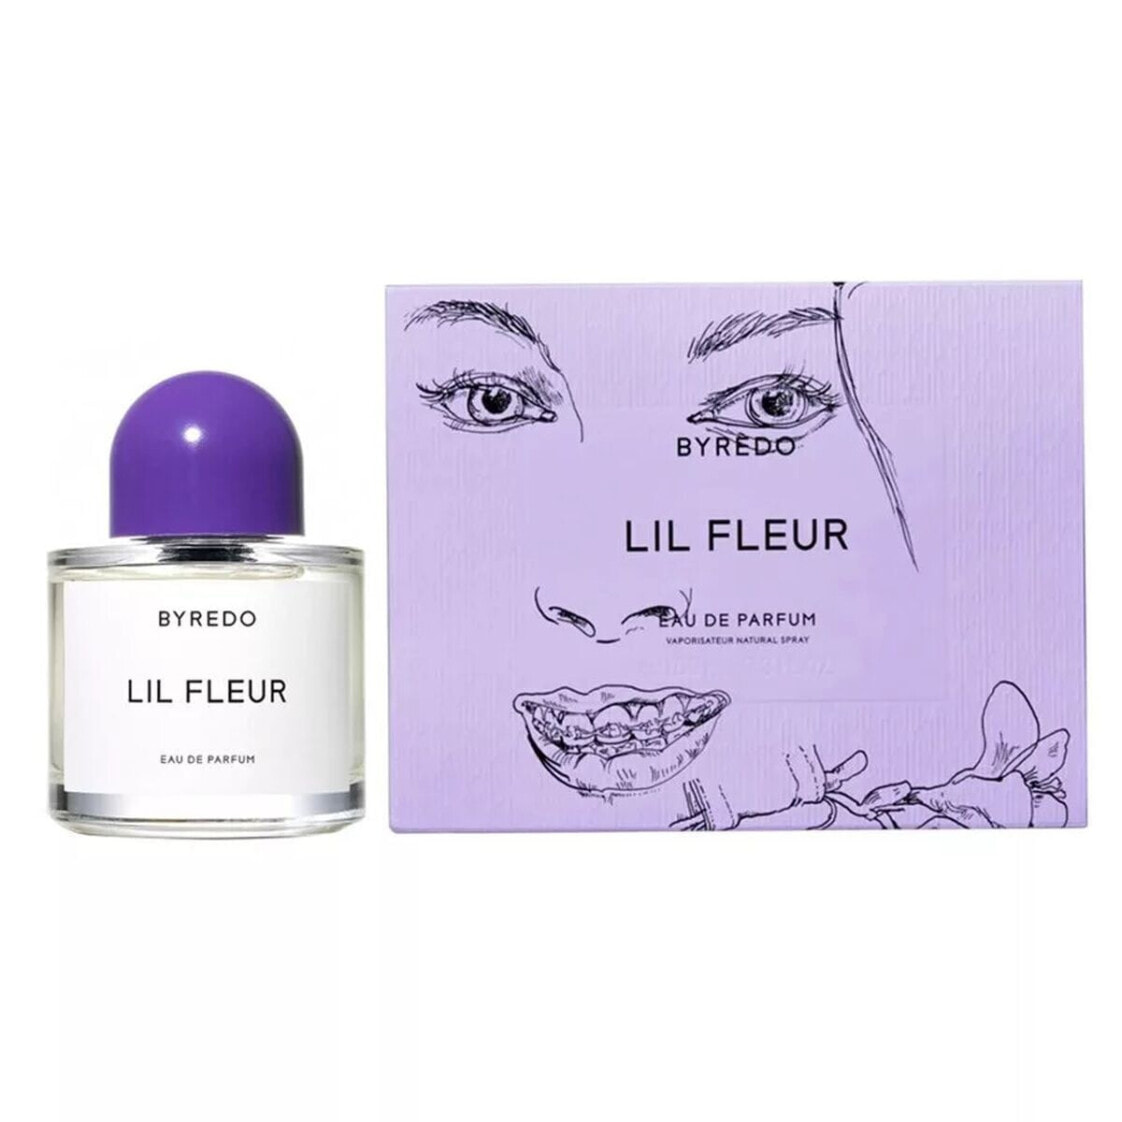 Lil fleur byredo. Byredo Lil fleur Limited Edition. Byredo Lilly fleur. Byredo Lil fleur EDP 50 ml. Парфюм Byredo Lil fleur Cassis 100ml.